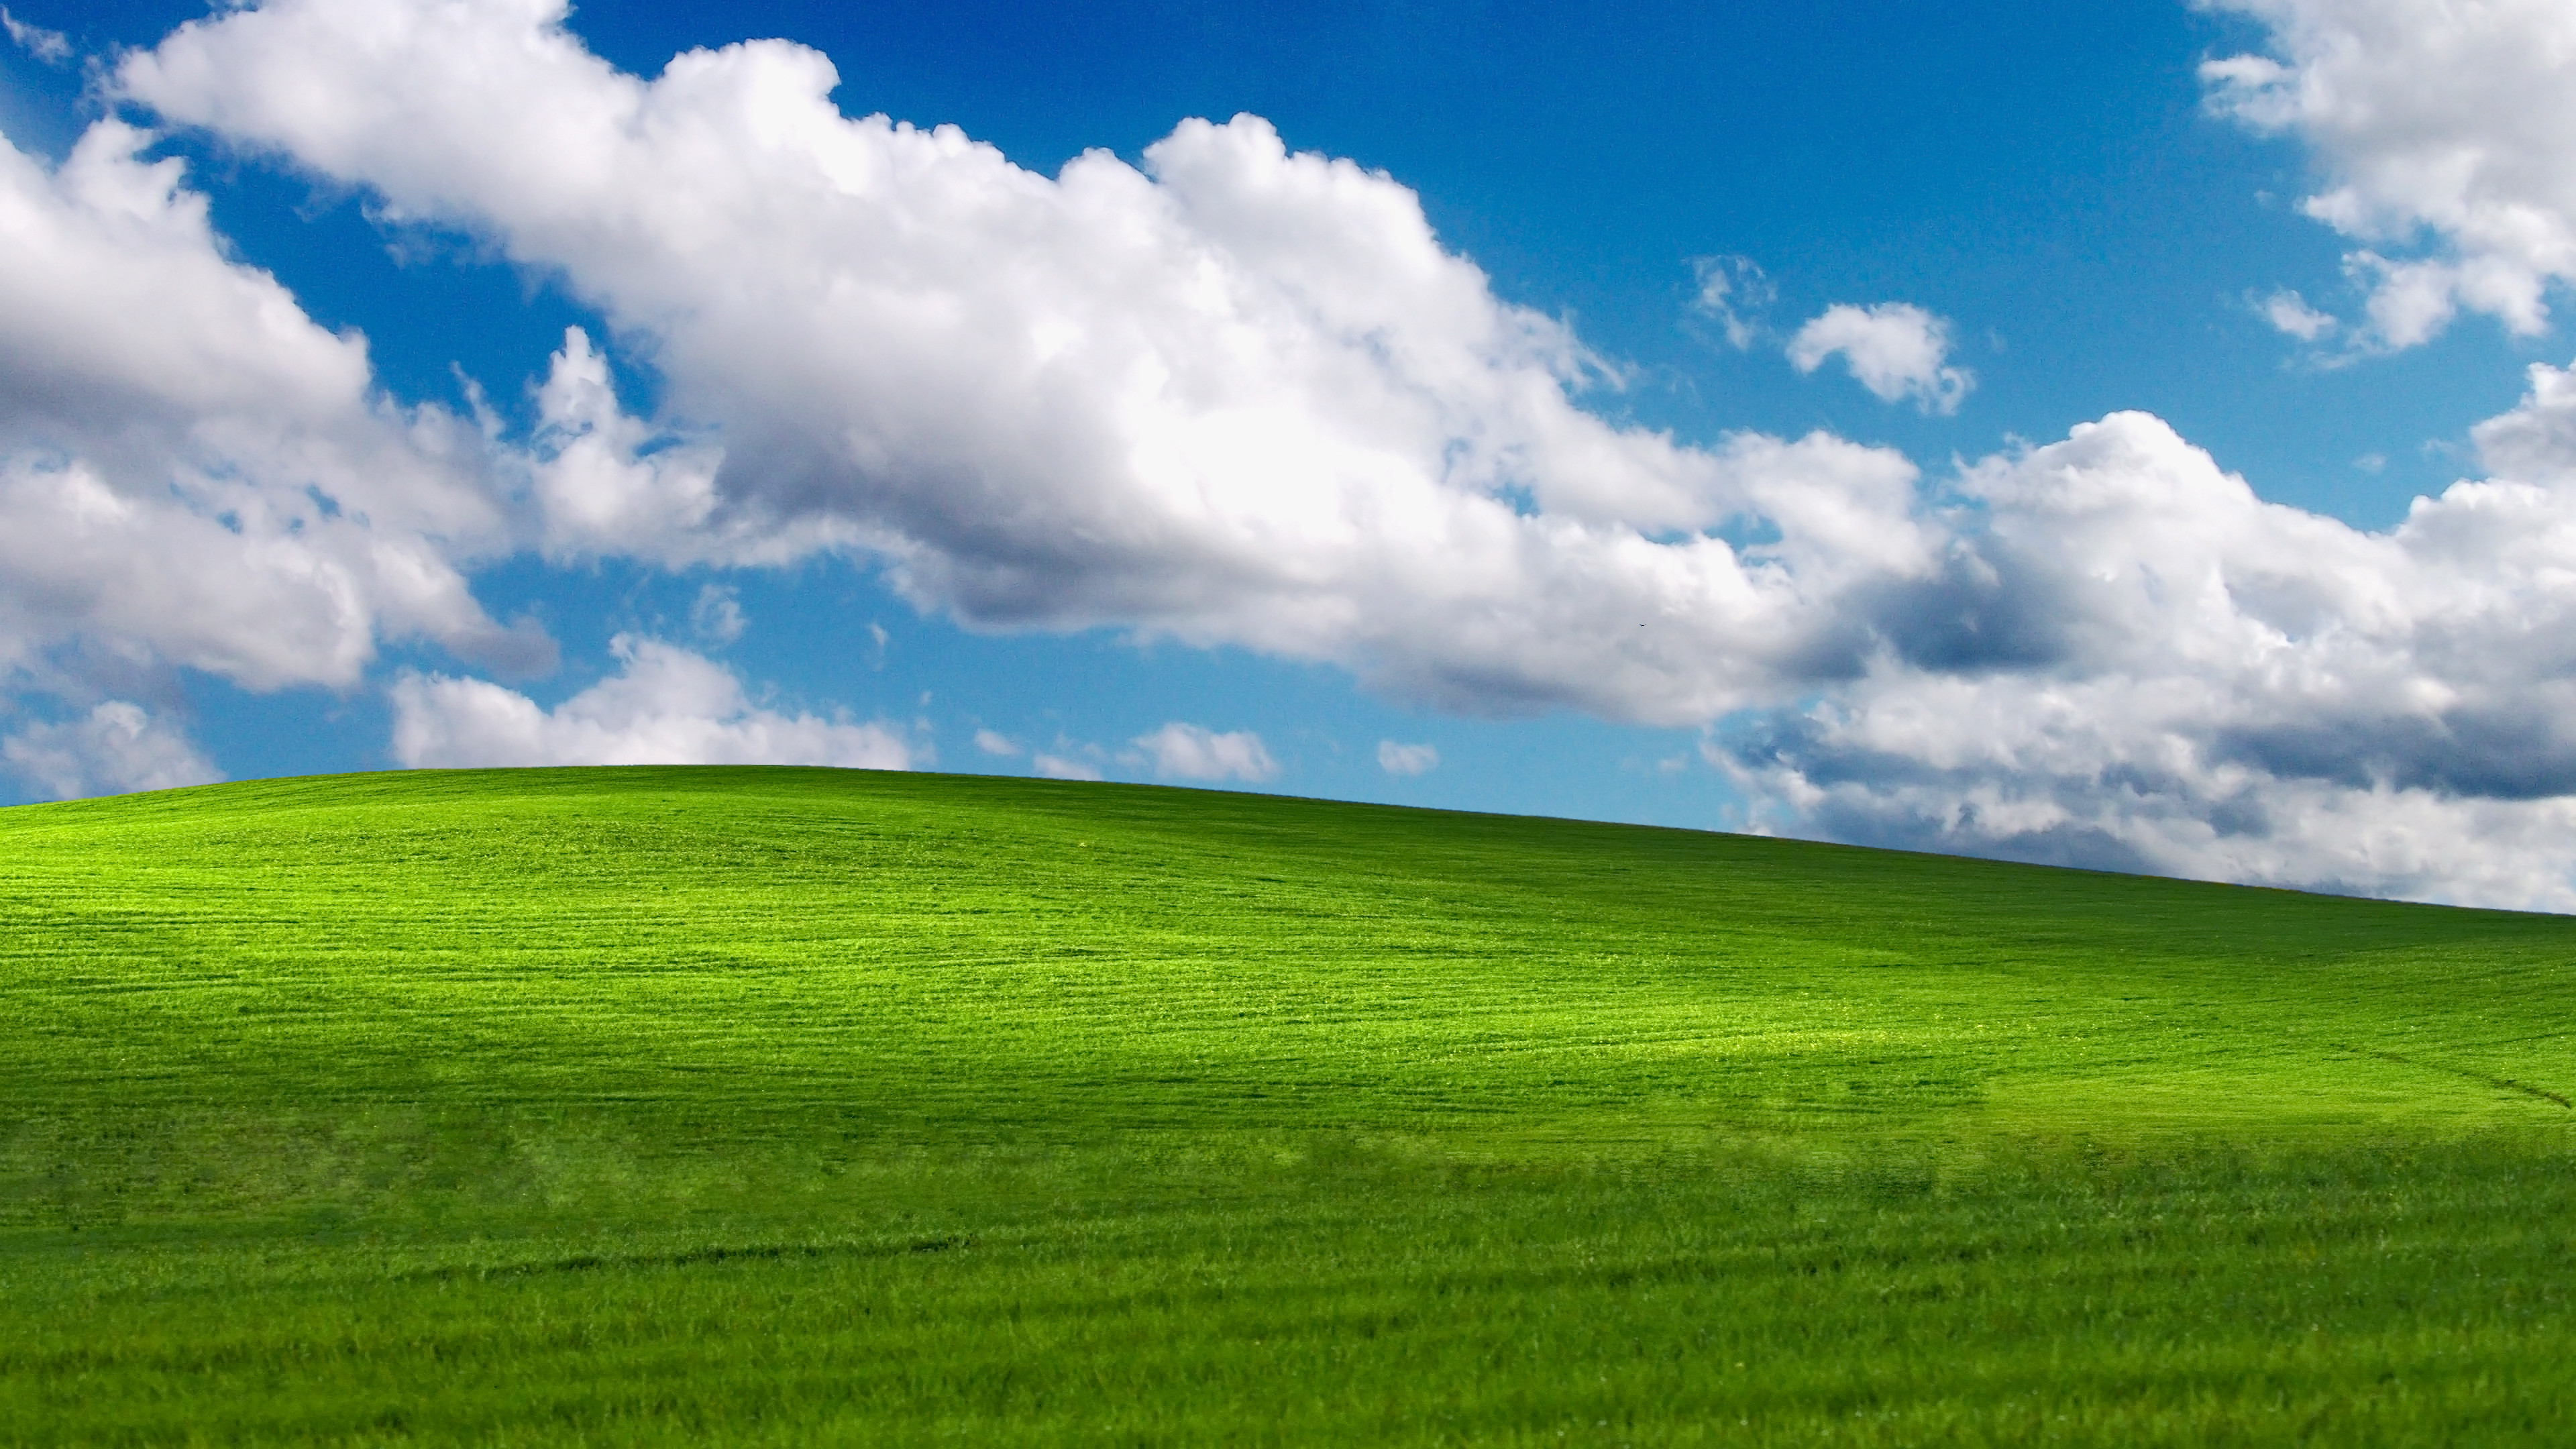 Bạn muốn tìm kiếm một hình nền đơn giản nhưng vẫn đẹp mắt cho máy tính của mình? XP Desktop Background là lựa chọn tuyệt vời cho bạn. Với những tùy chọn màu sắc đơn giản nhưng không kém phần ấn tượng, hình nền này sẽ giúp máy tính của bạn trở nên đầy sức sống. Hãy cùng khám phá ngay!